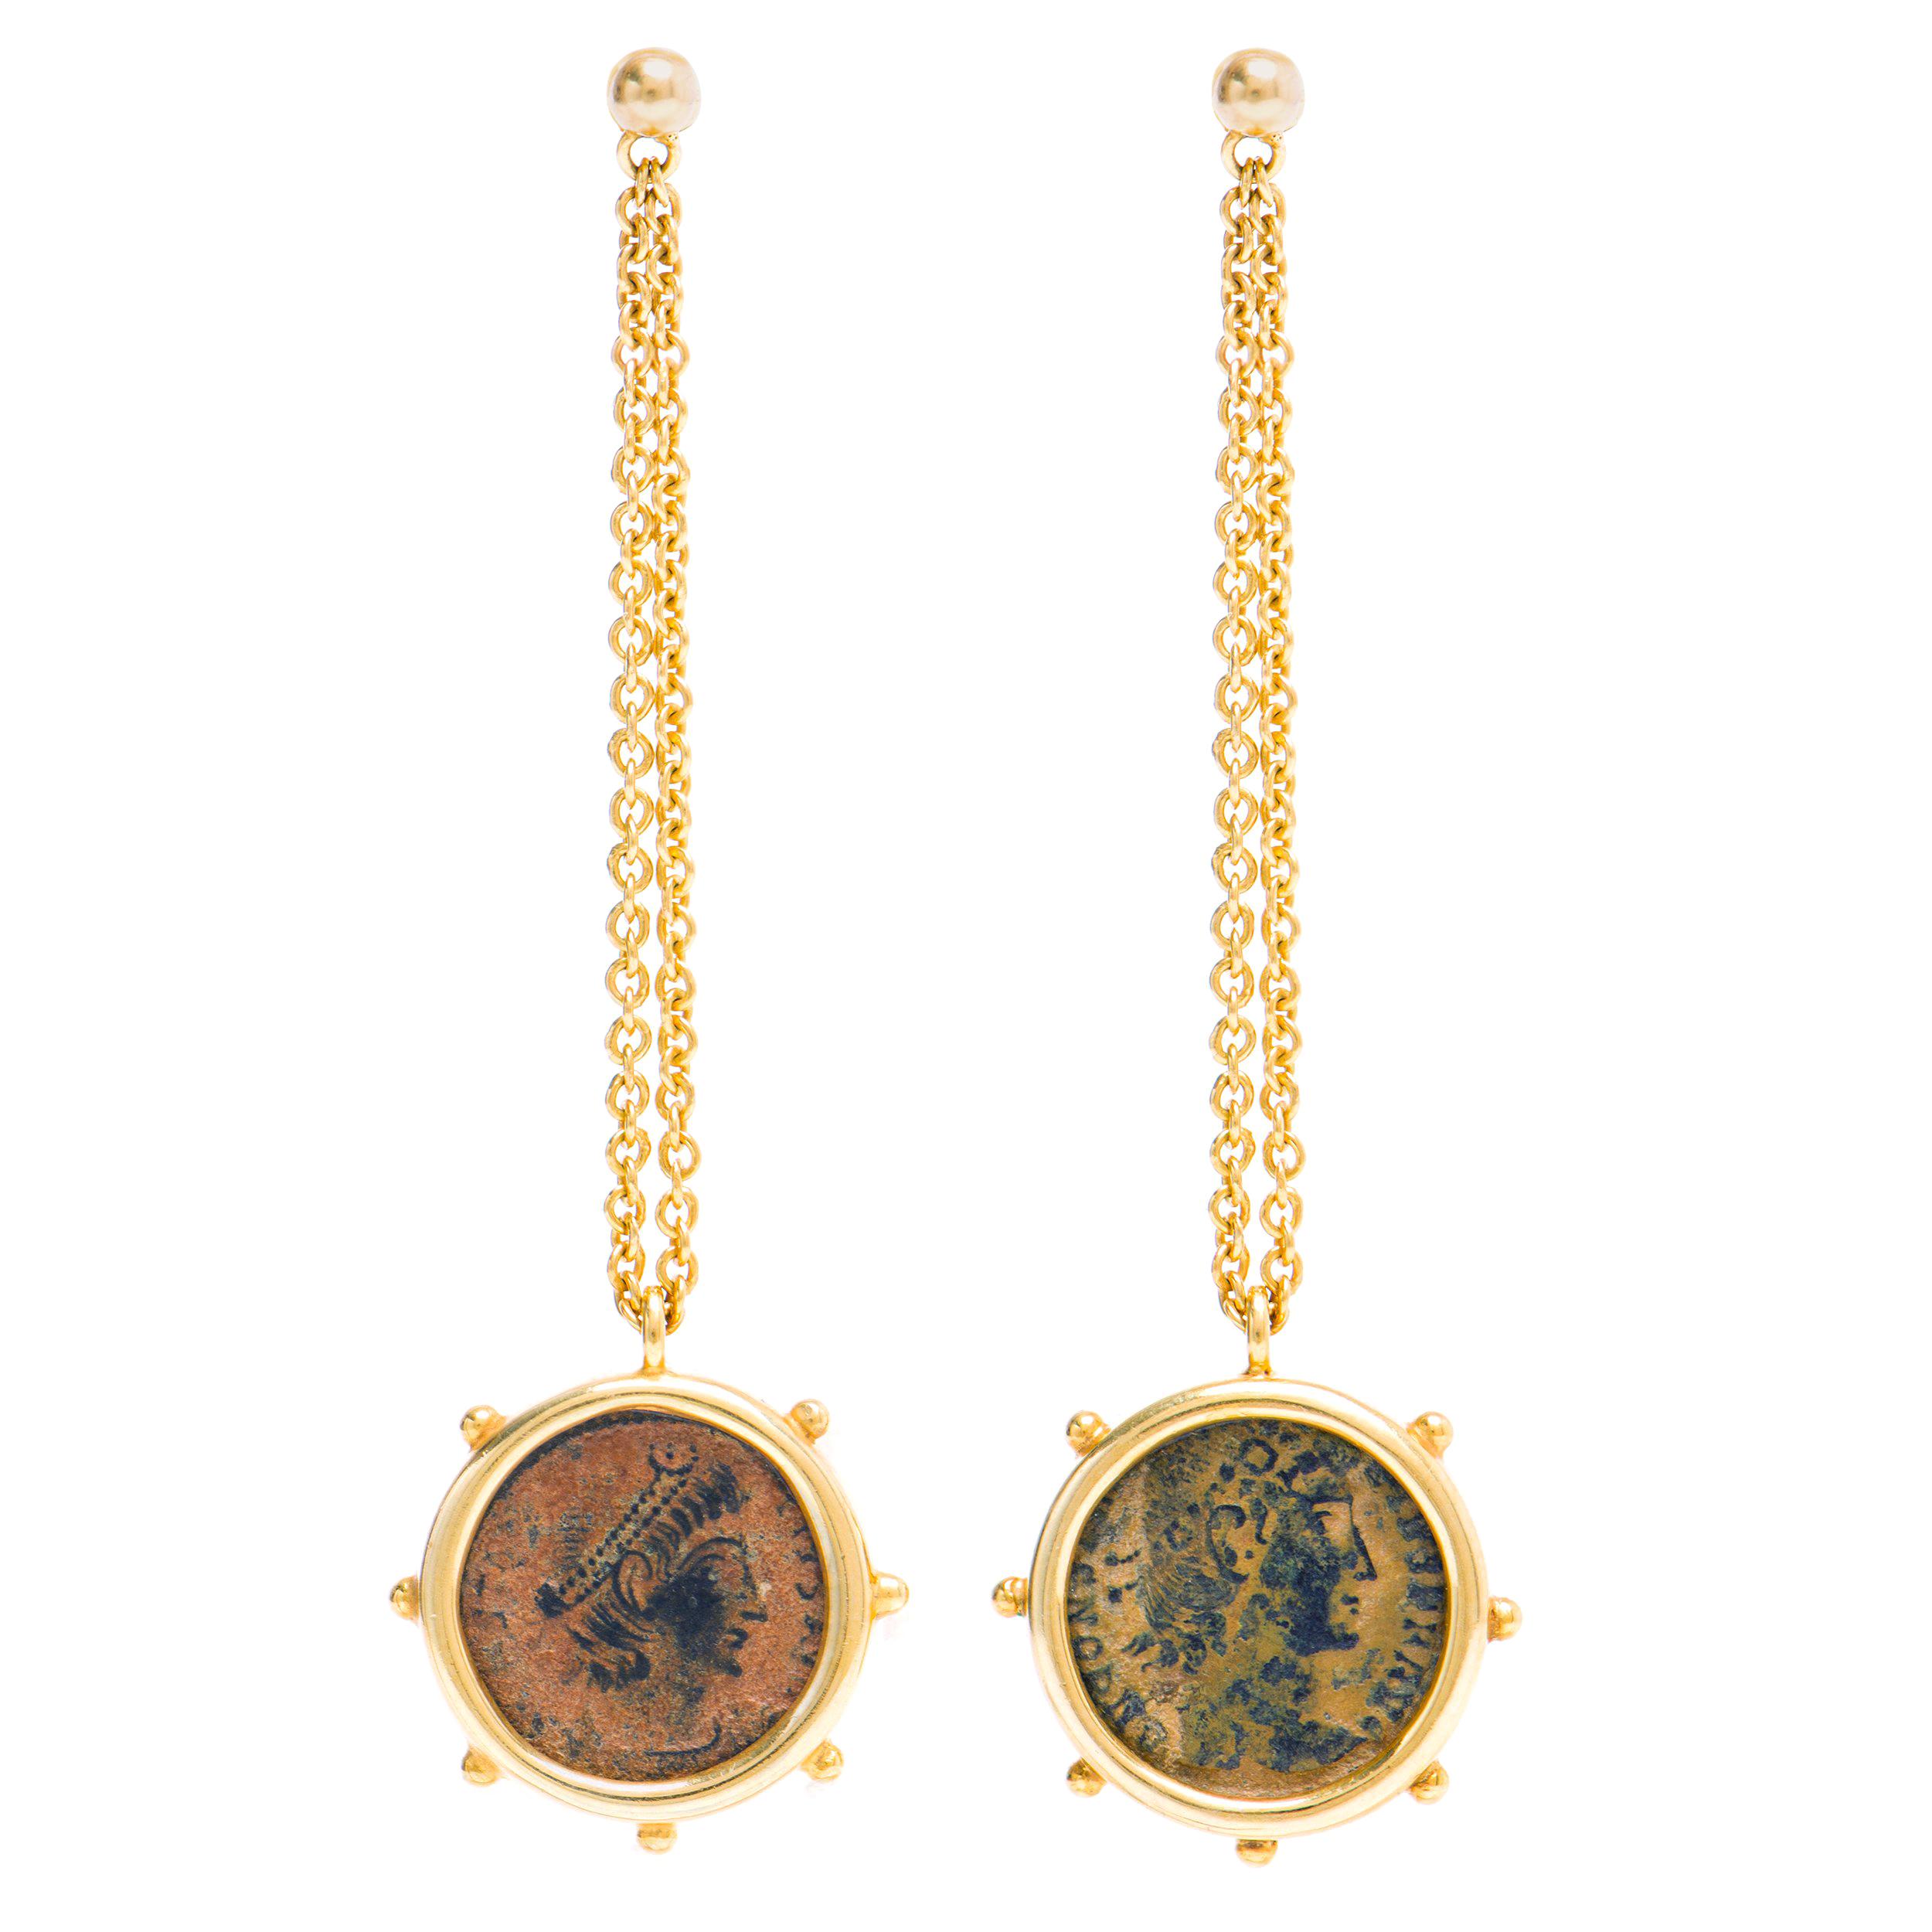 Boucles d'oreilles Dubini Empires en or jaune 18 carats avec pièce de bronze antique